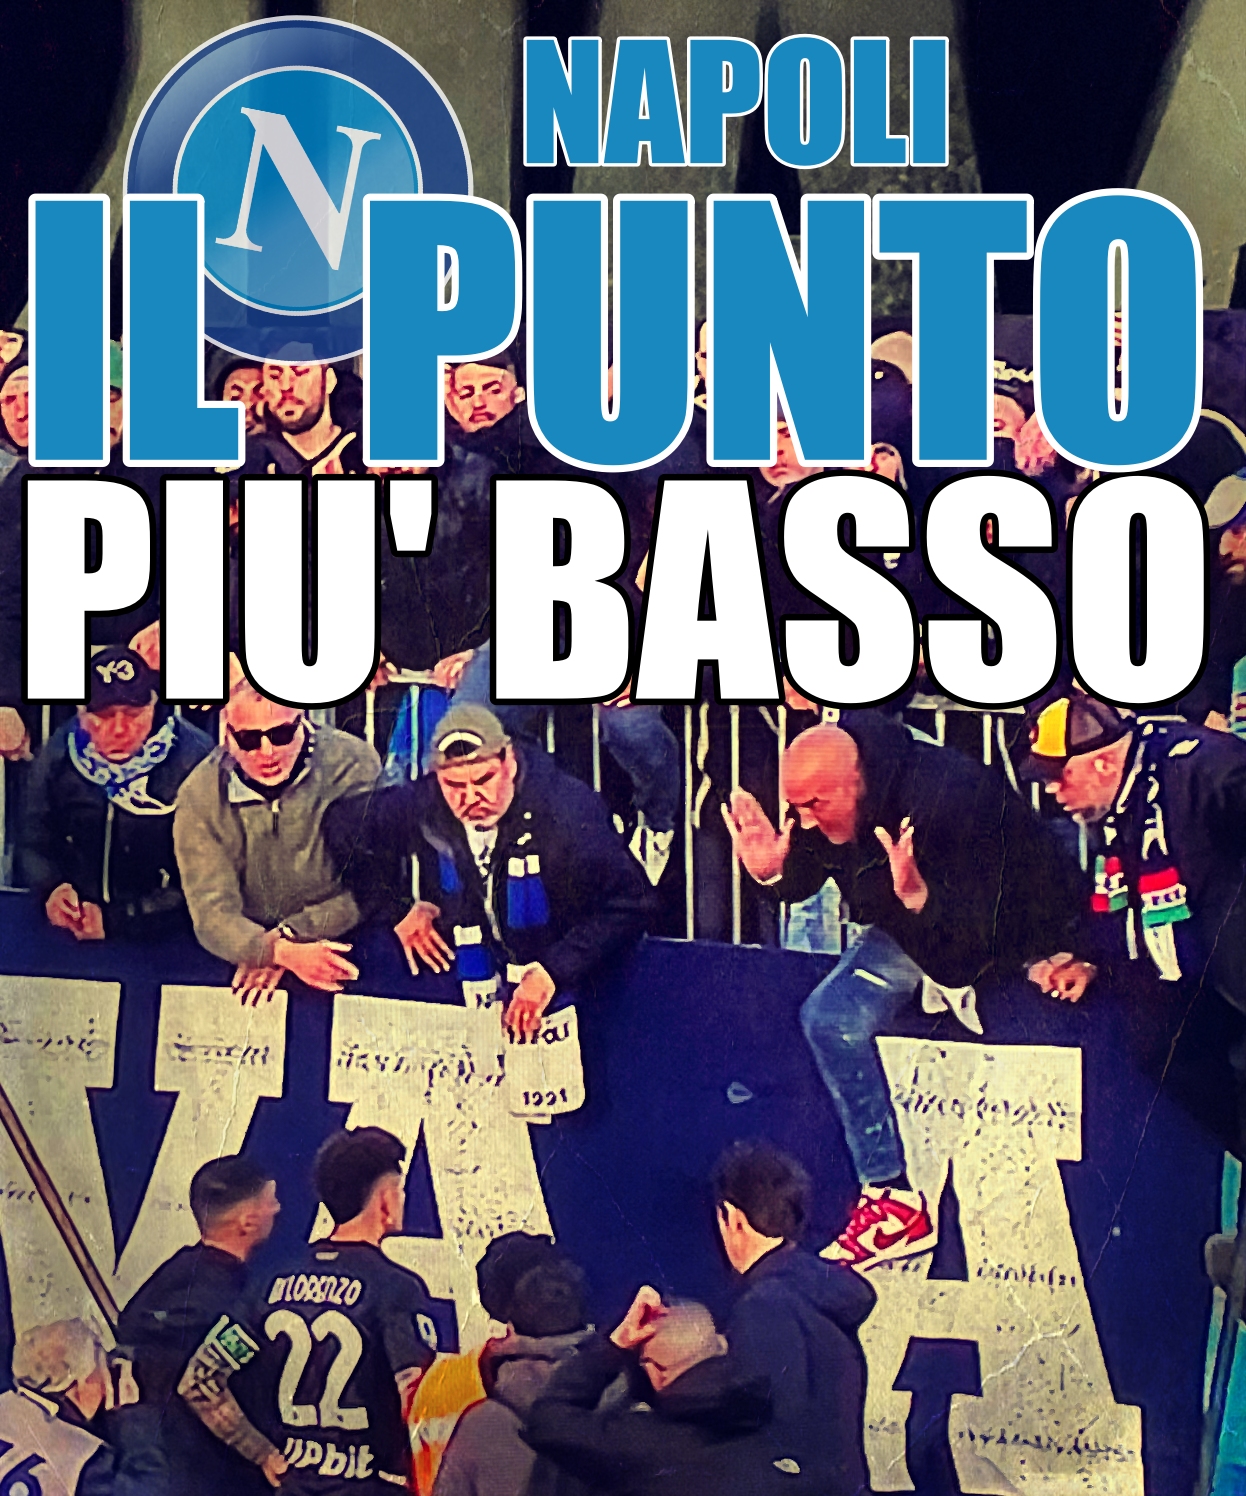 Empoli - Napoli 1-0. al termine della partita i giocatori del Napoli contestati dai tifosi